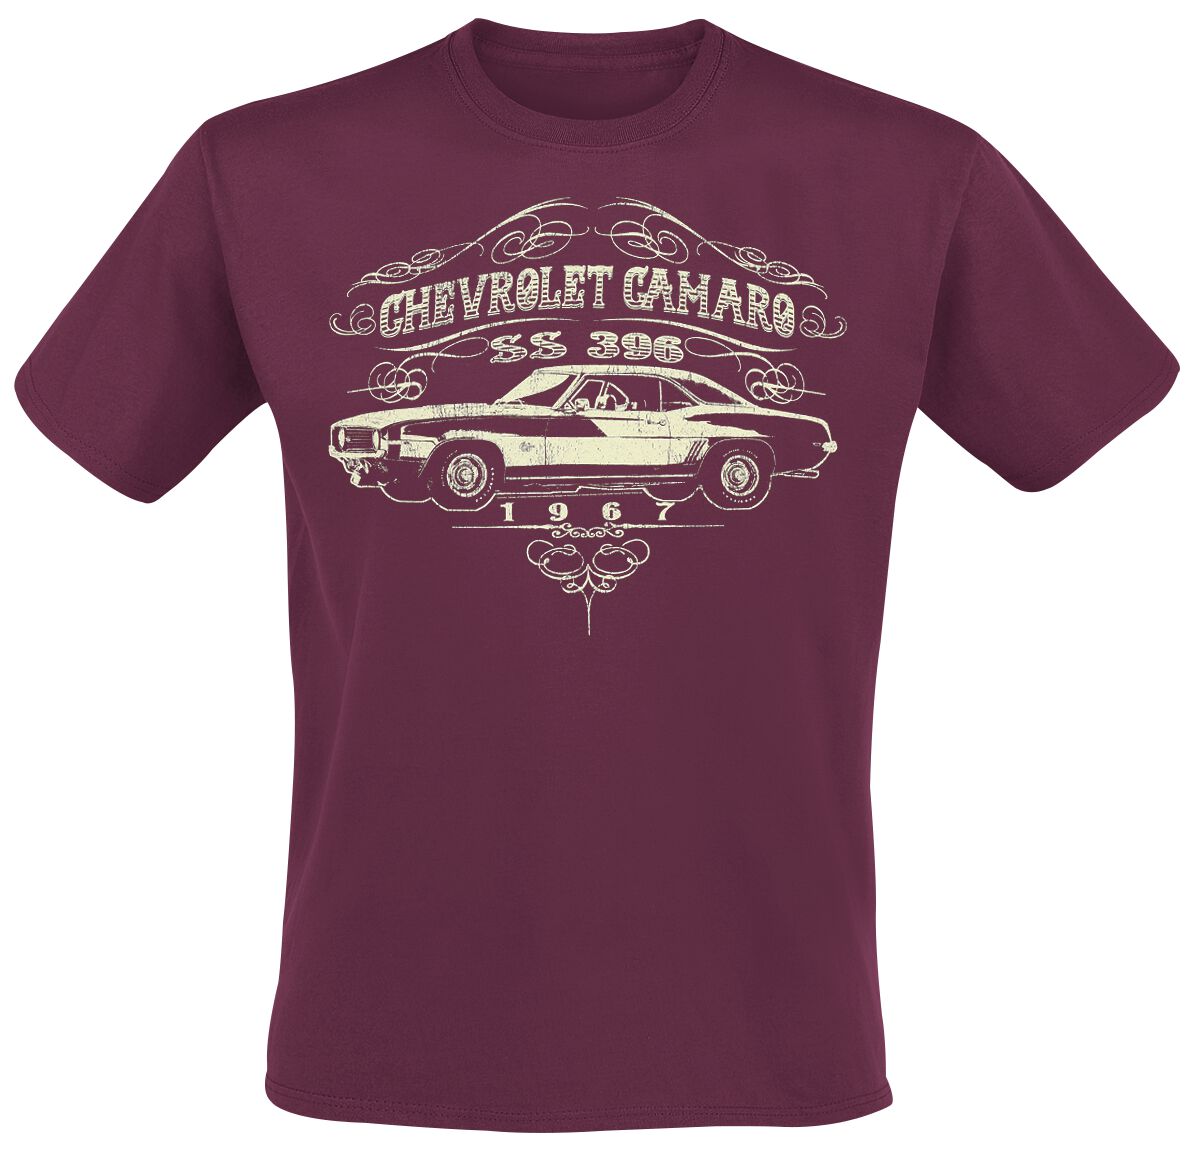 T-Shirt Manches courtes Rockabilly de General Motors - 1967 Chevrolet Camaro SS 396 - S à XXL - pour